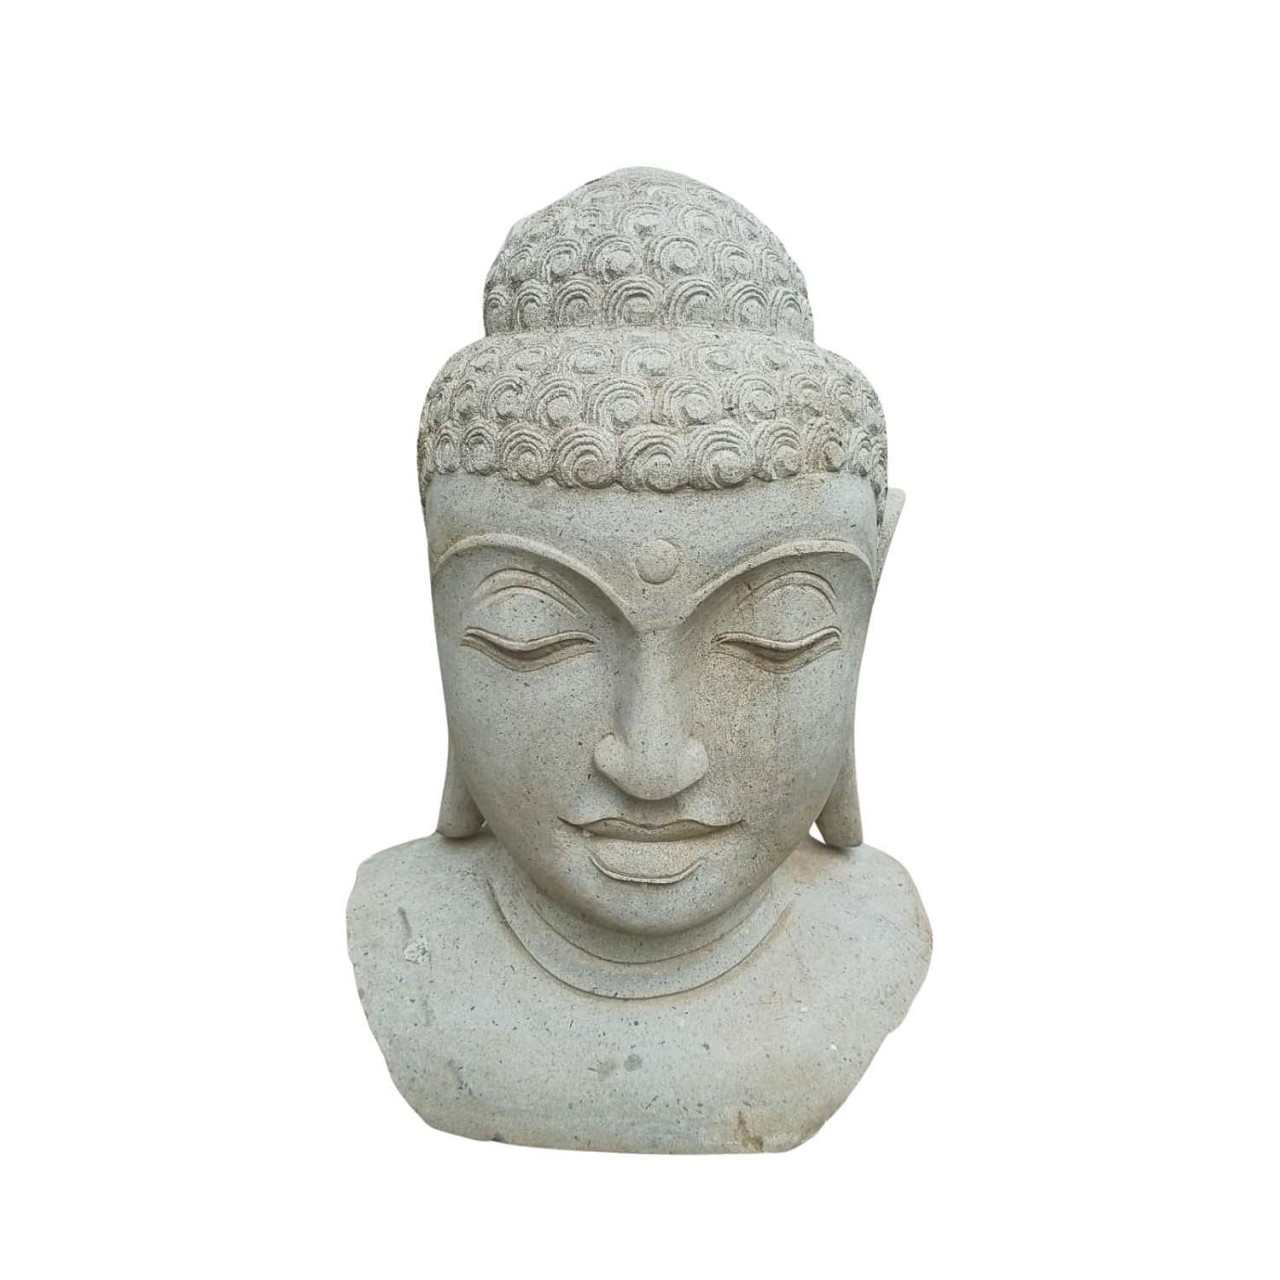 Ein majestätischer Buddha-Kopf für Ihren Garten - jetzt zum reduzierten Preis!